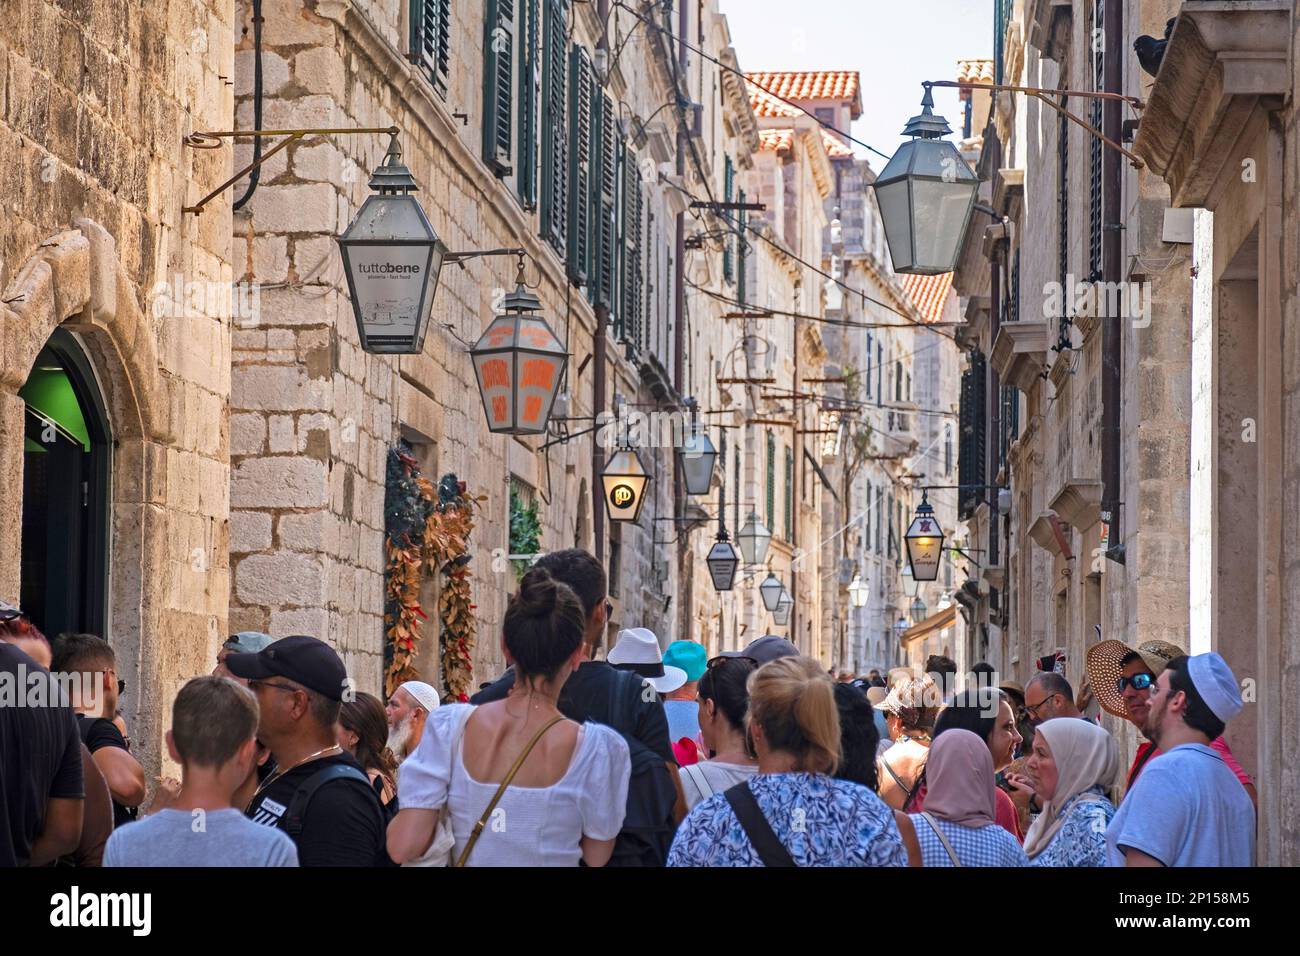 Turisti nel vicolo affollato Ulica od Puča / strada dei Wells nella città vecchia, centro storico di Dubrovnik, Dalmazia meridionale, Croazia Foto Stock